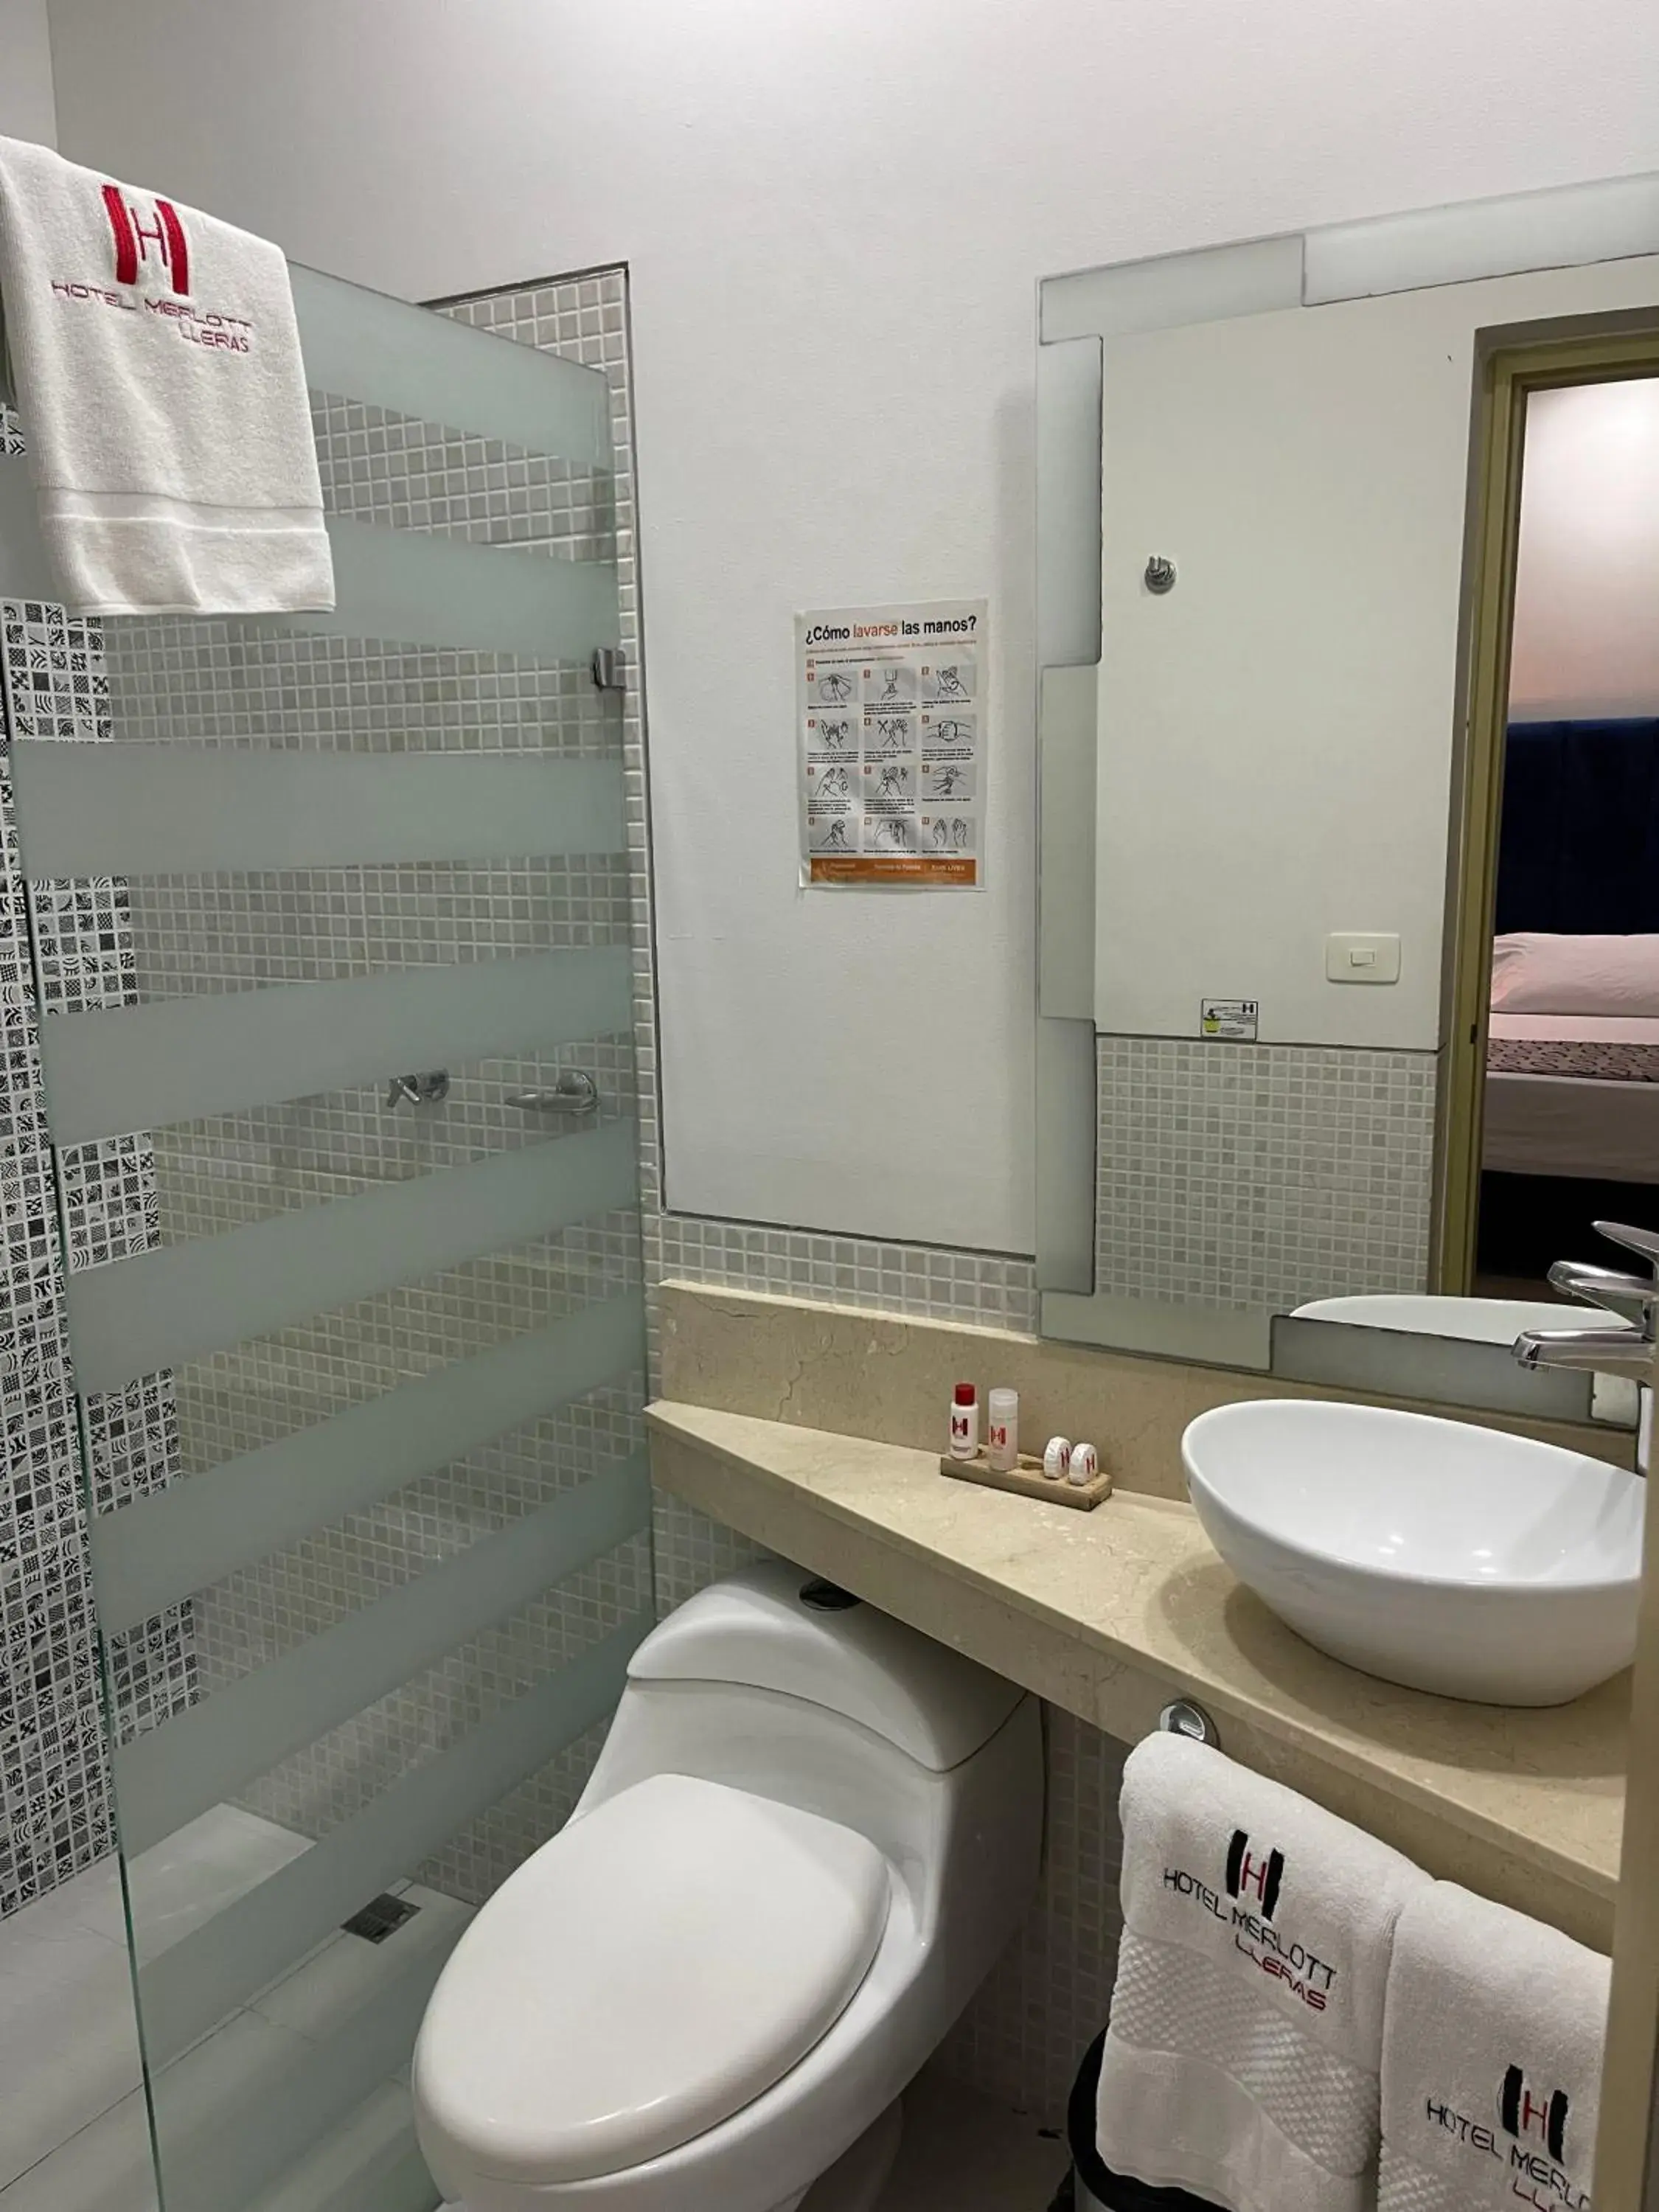 Bathroom in Hotel Merlott Lleras